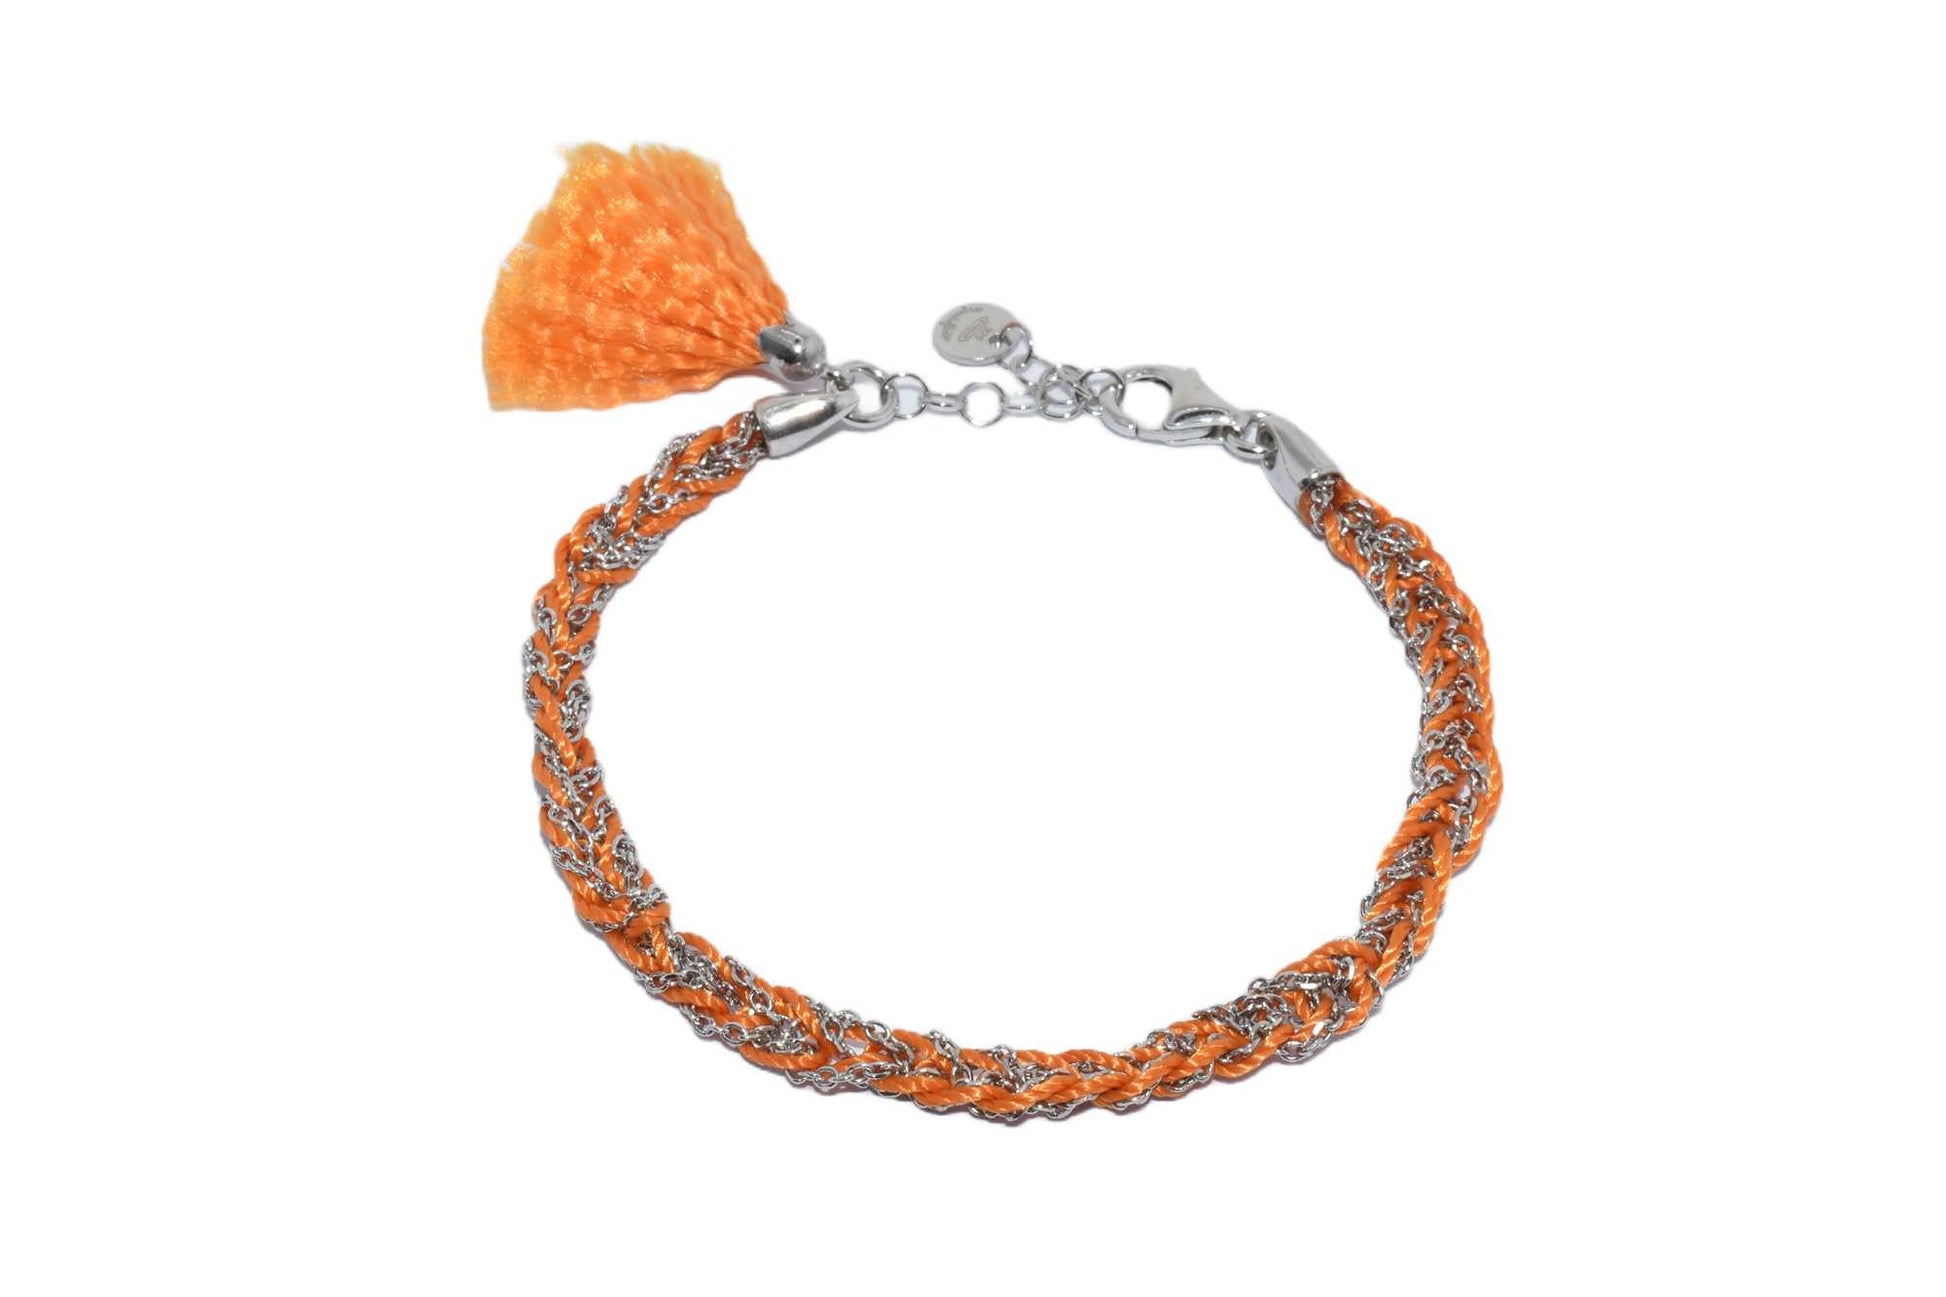 Bracciale-uncinetto-con-cotone-arancione-Argentofilato-in-argento-925